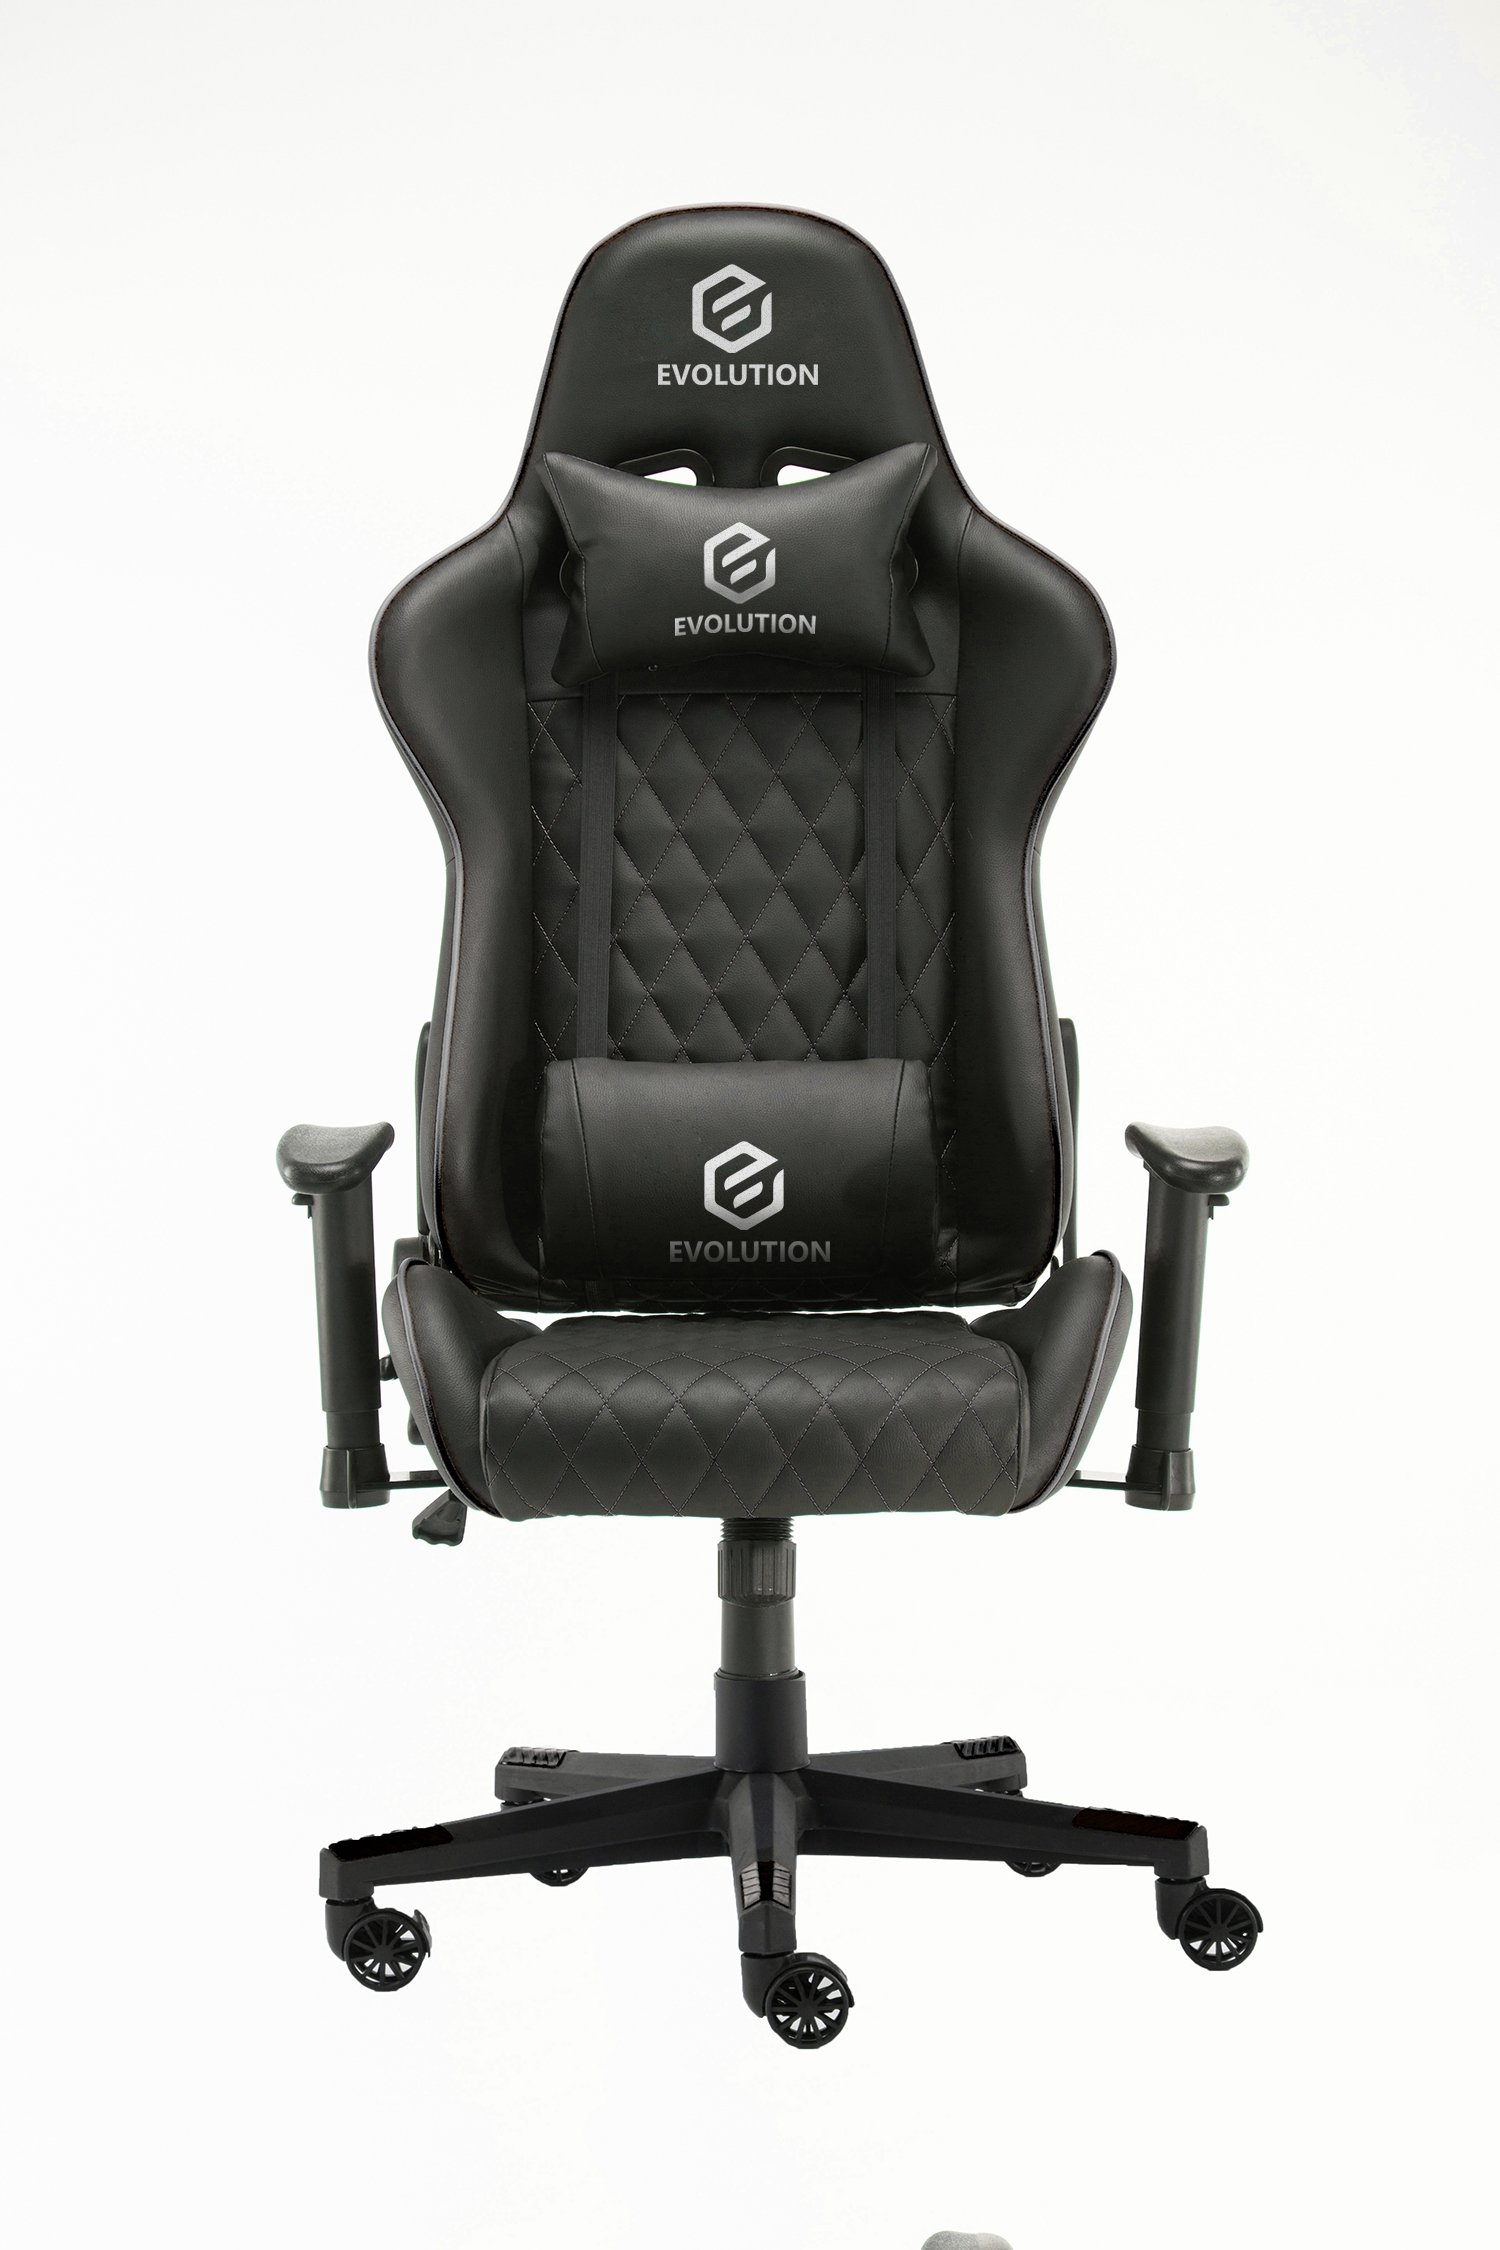 

Кресло геймерcкое Evolution TACTIC 1 черный, TACTIC 1 черный